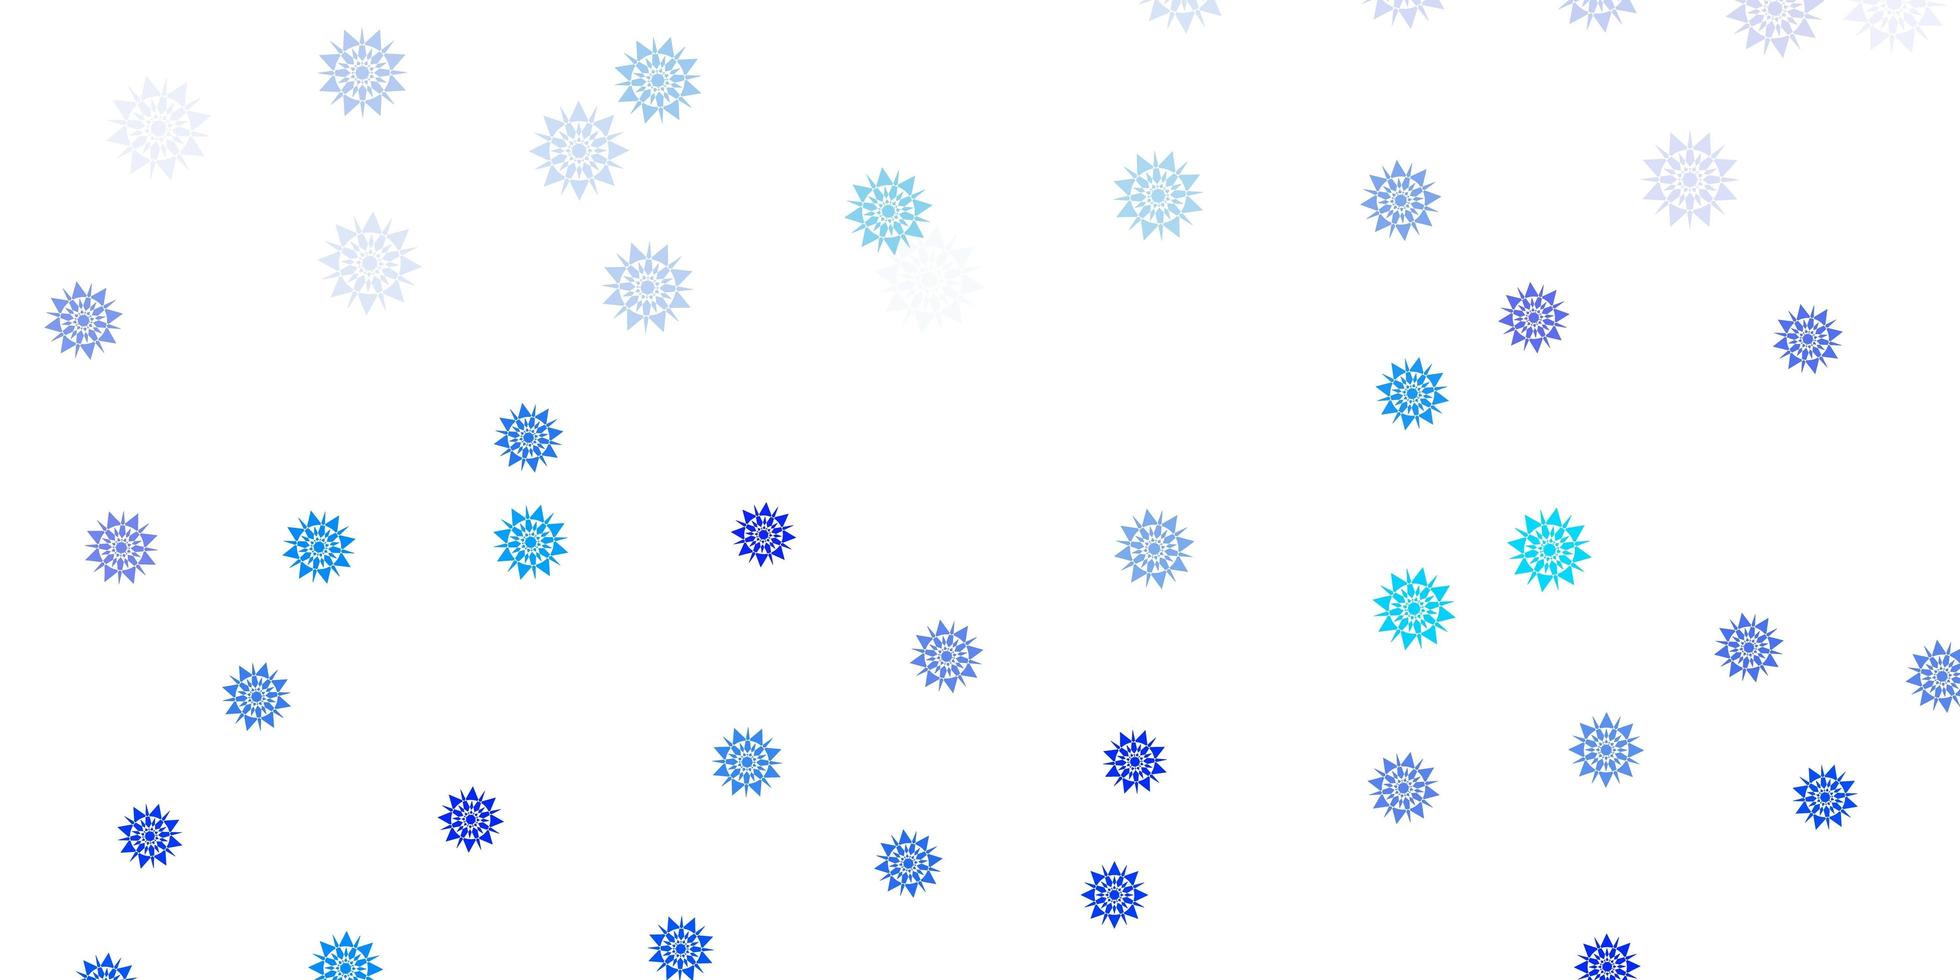 struttura di vettore blu chiaro con fiocchi di neve luminosi.